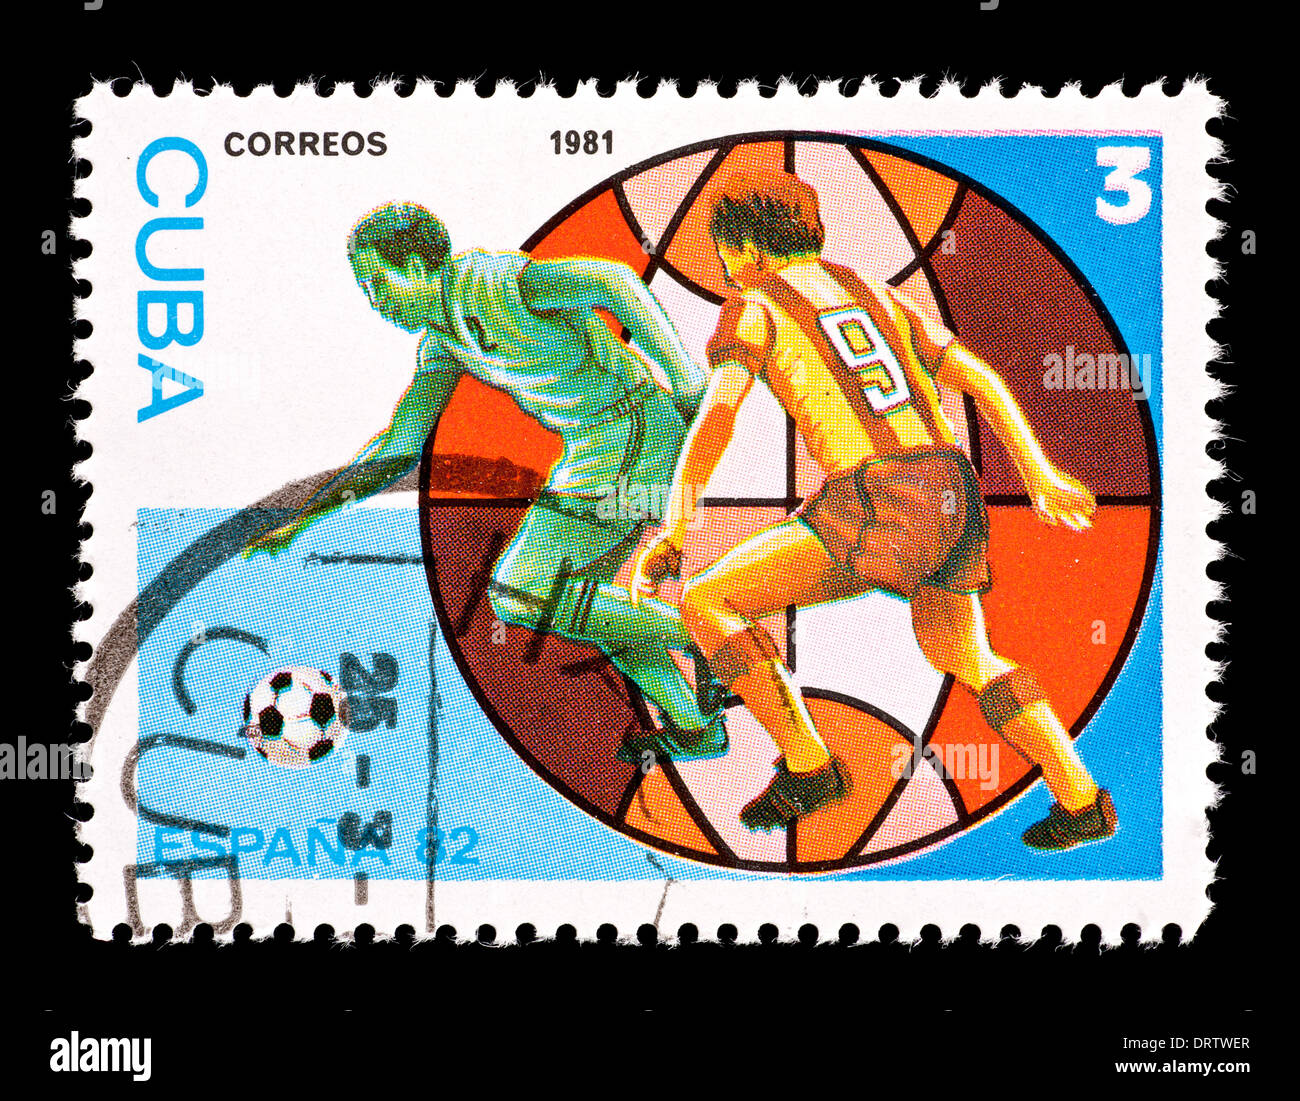 Timbre-poste de Cuba représentant deux joueurs de football, émis pour la Coupe du Monde 1982 en Espagne. Banque D'Images